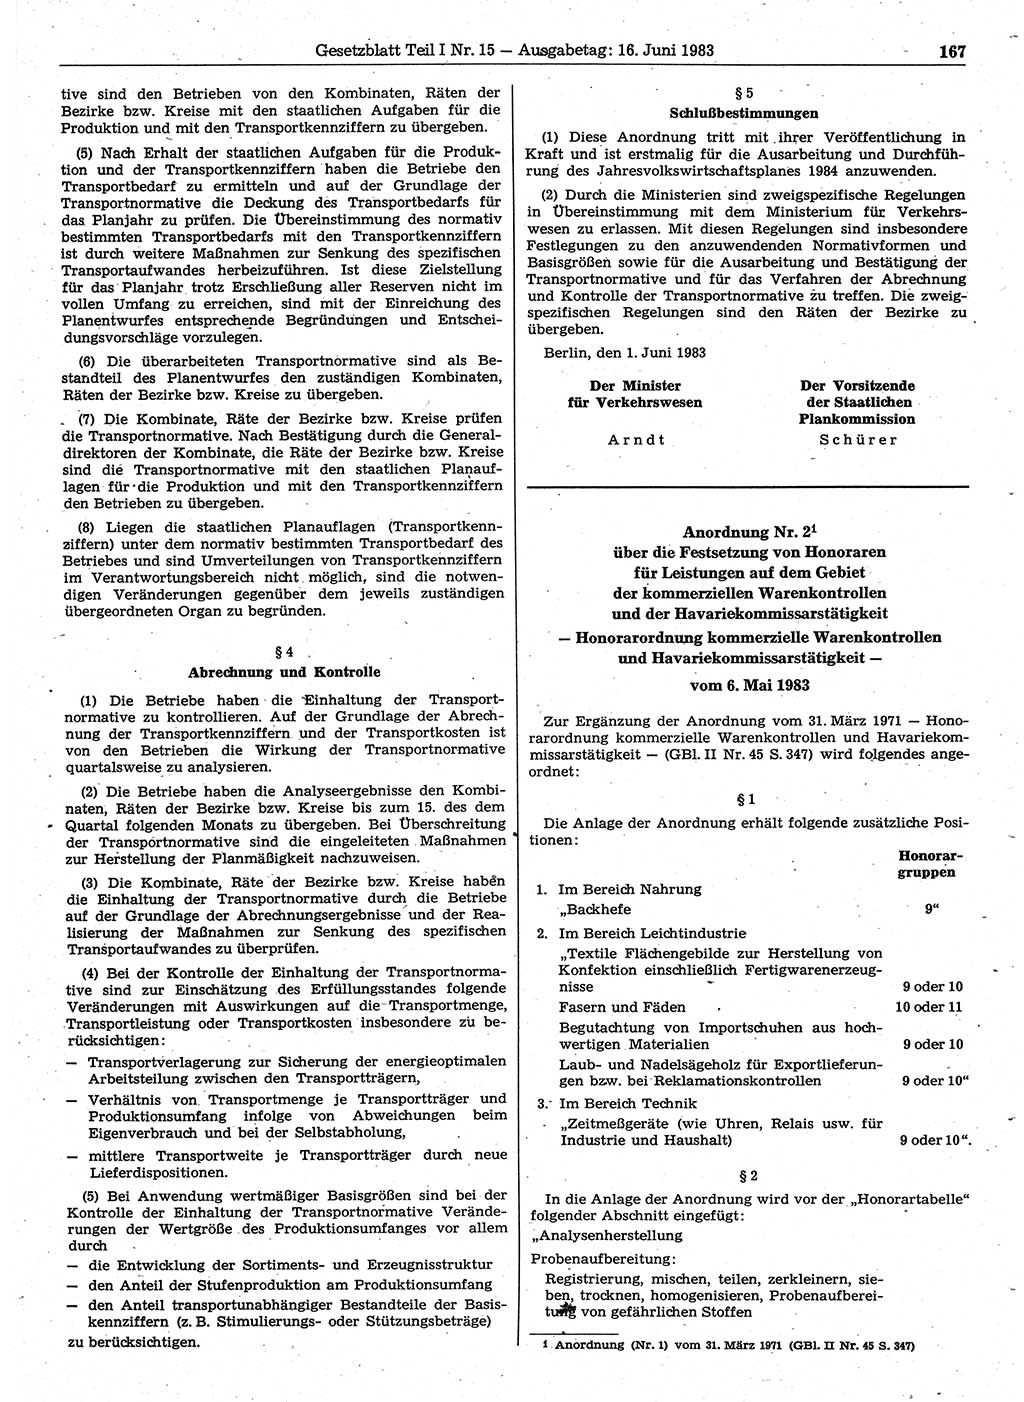 Gesetzblatt (GBl.) der Deutschen Demokratischen Republik (DDR) Teil Ⅰ 1983, Seite 167 (GBl. DDR Ⅰ 1983, S. 167)